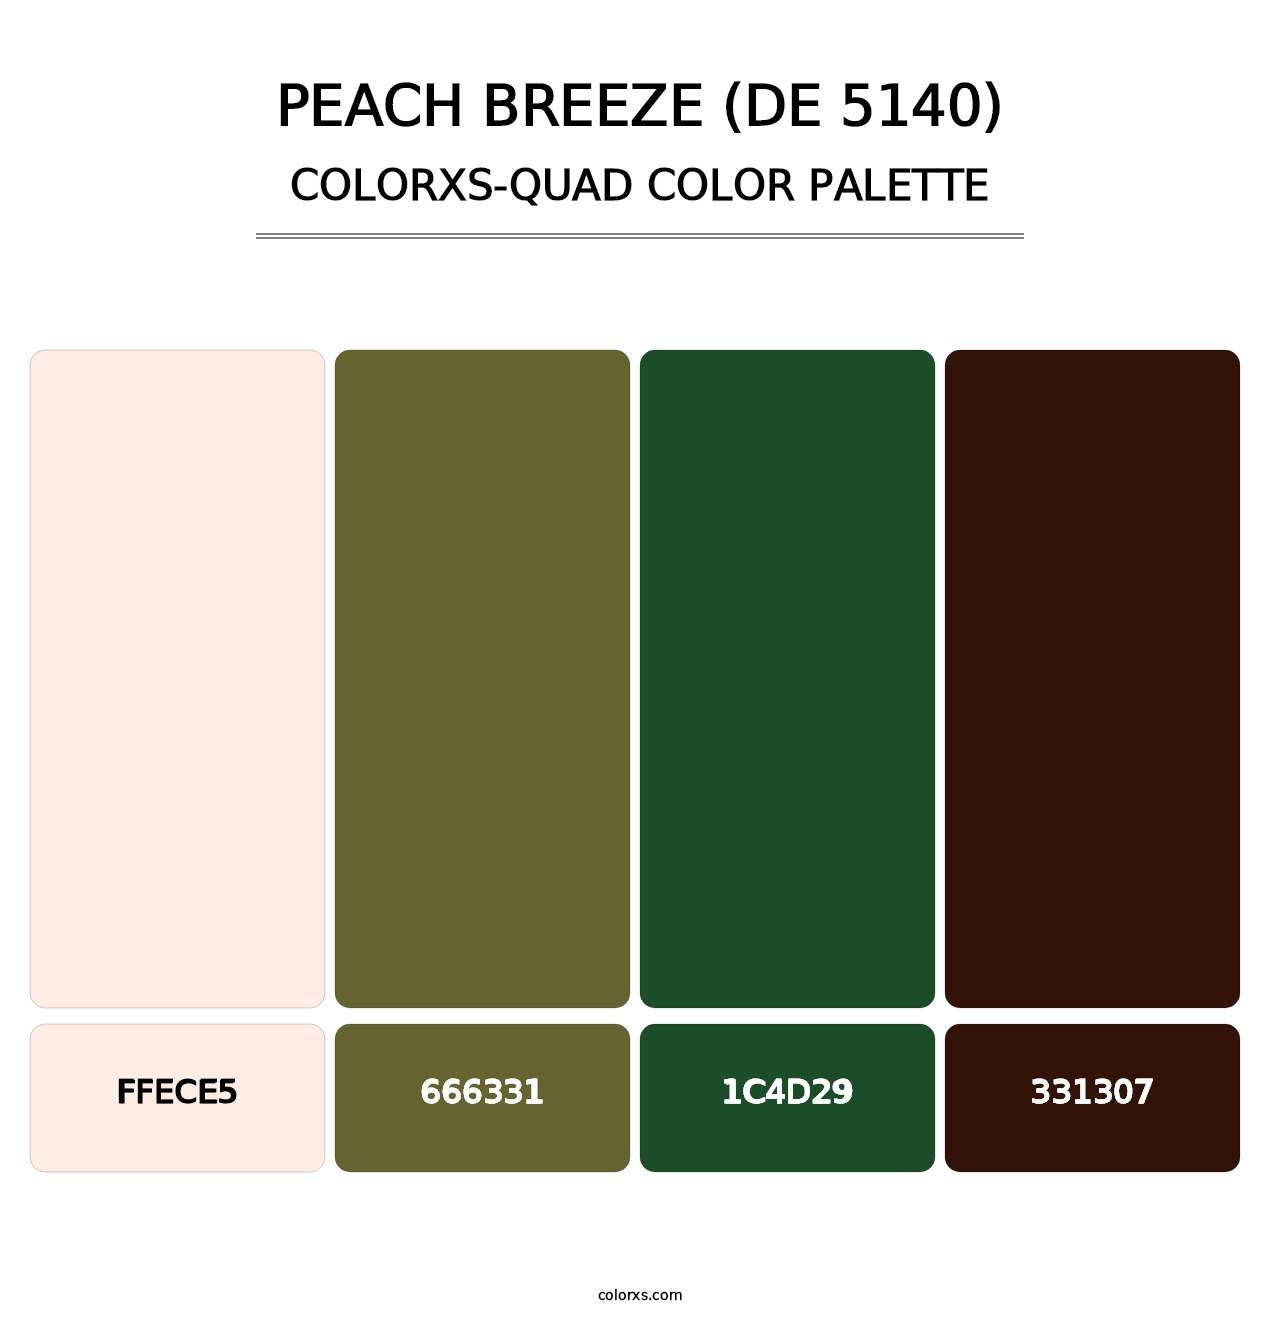 Peach Breeze (DE 5140) - Colorxs Quad Palette